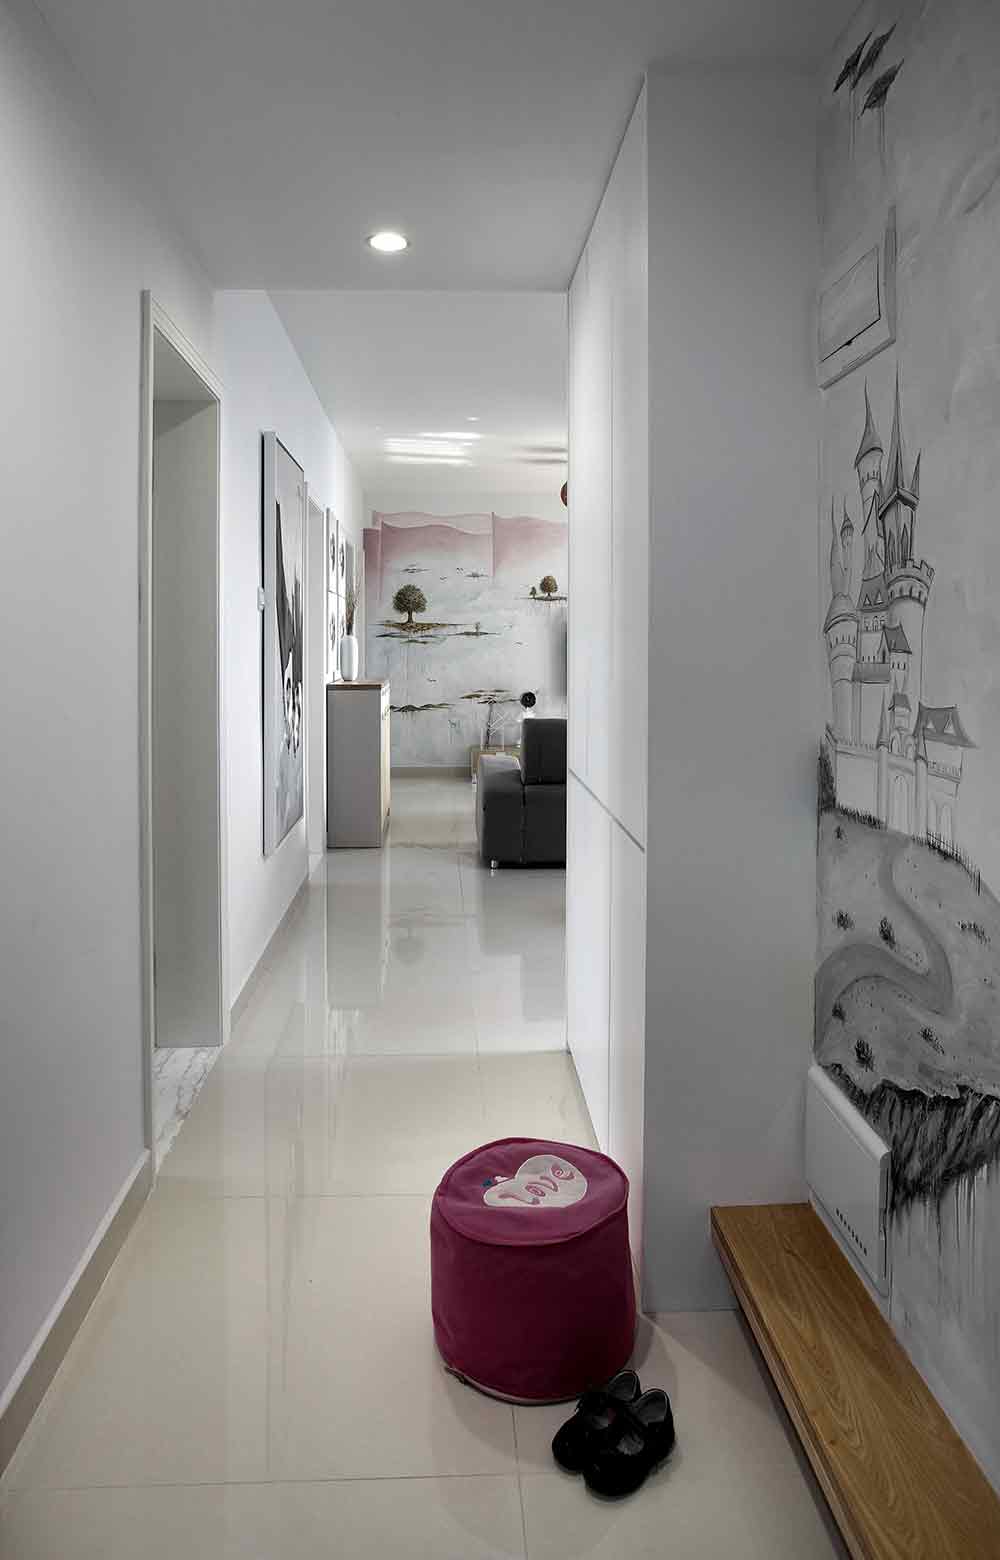 玄关处墙面以纯白作为基底，设计师以黑白的笔触描绘了富有童趣的意境。以简单的层板代替鞋架，创意十足。